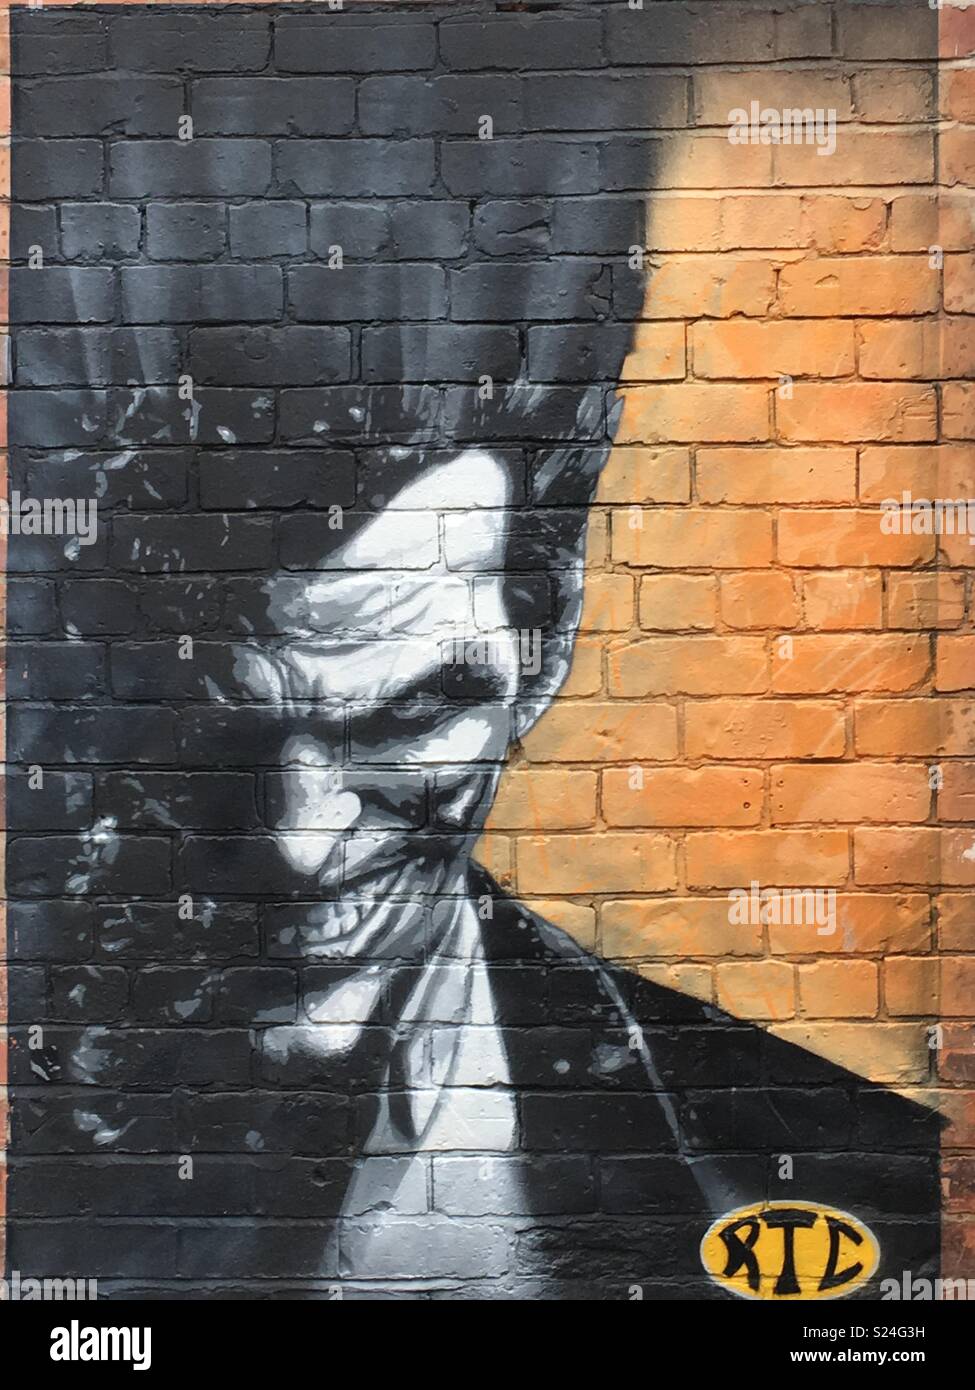 Joker Batman Pixel Art – BRIK